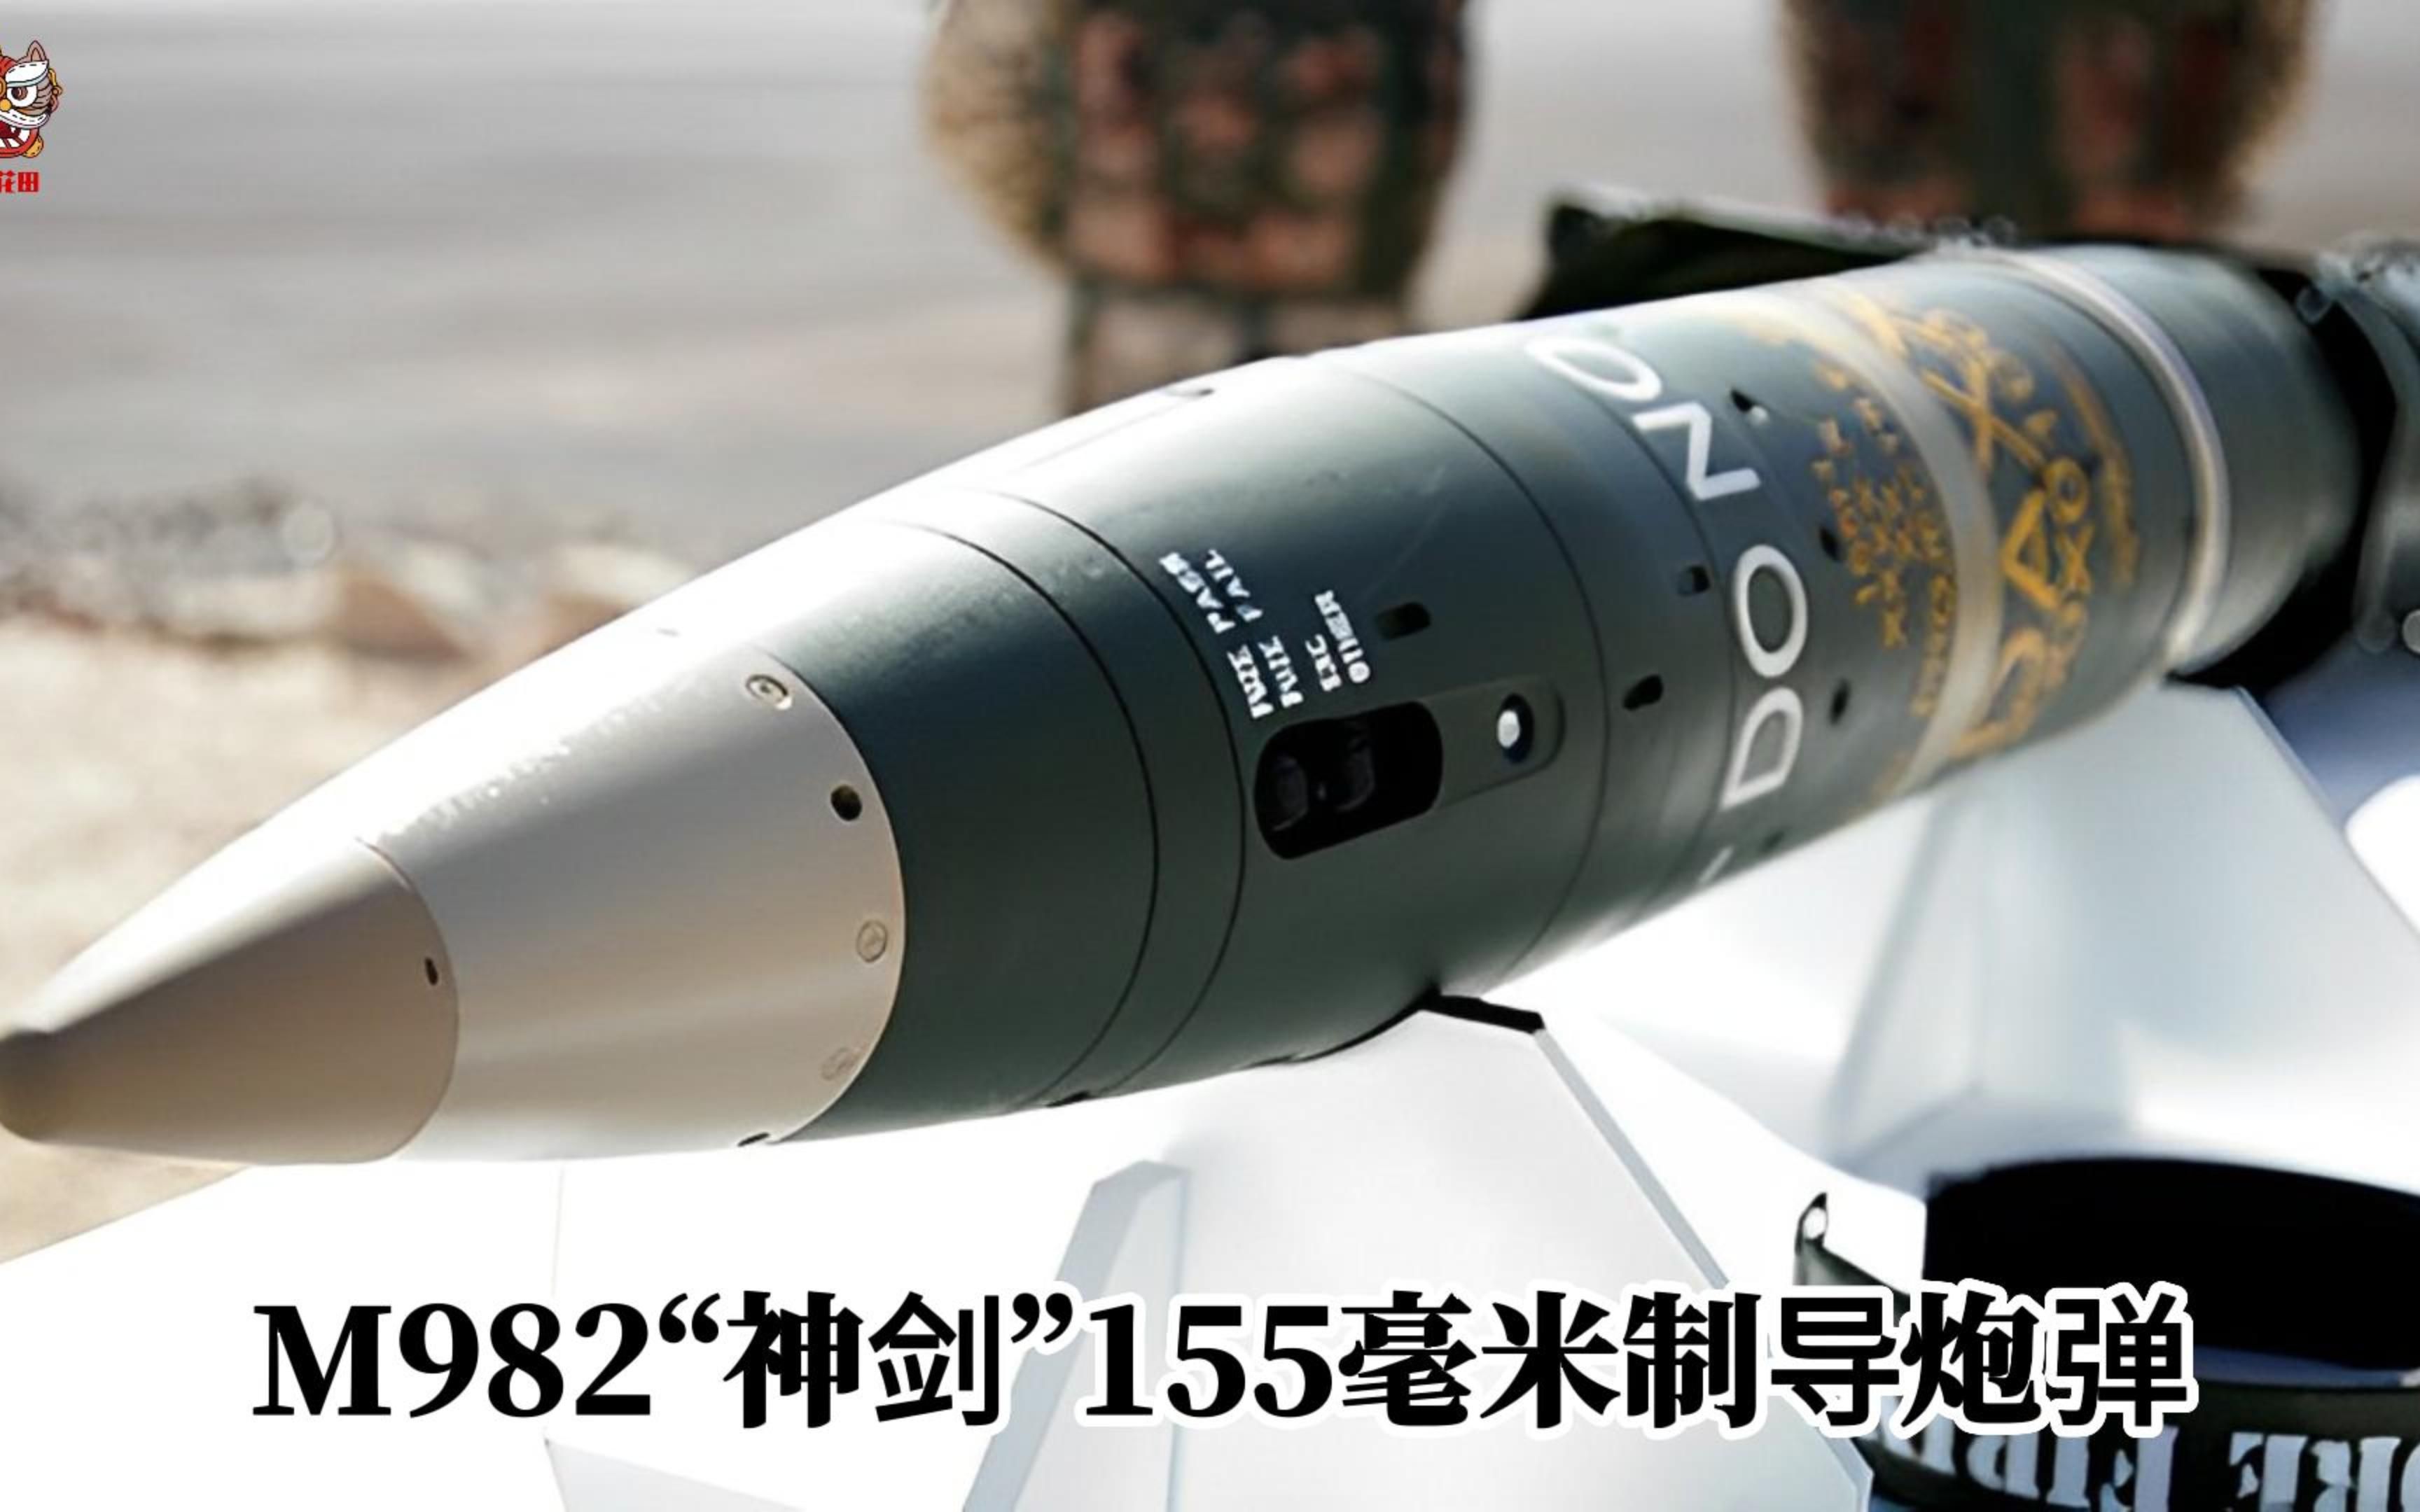 射程60公里误差不超过10米—美国m982神剑精确制导炮弹